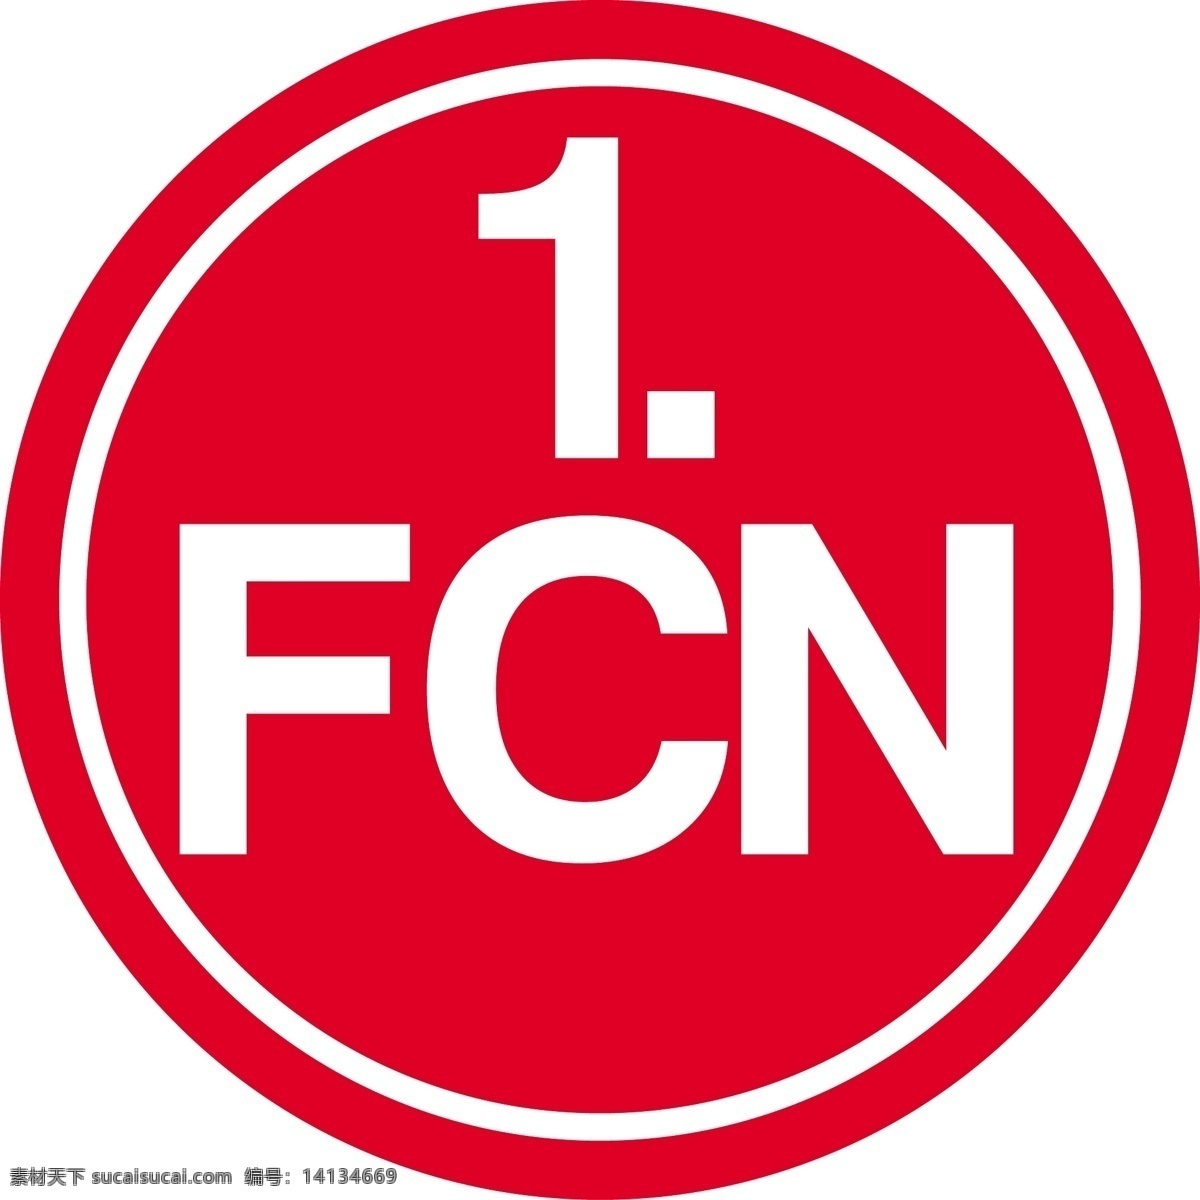 纽伦堡 标识 公司 免费 品牌 品牌标识 商标 矢量标志下载 免费矢量标识 矢量